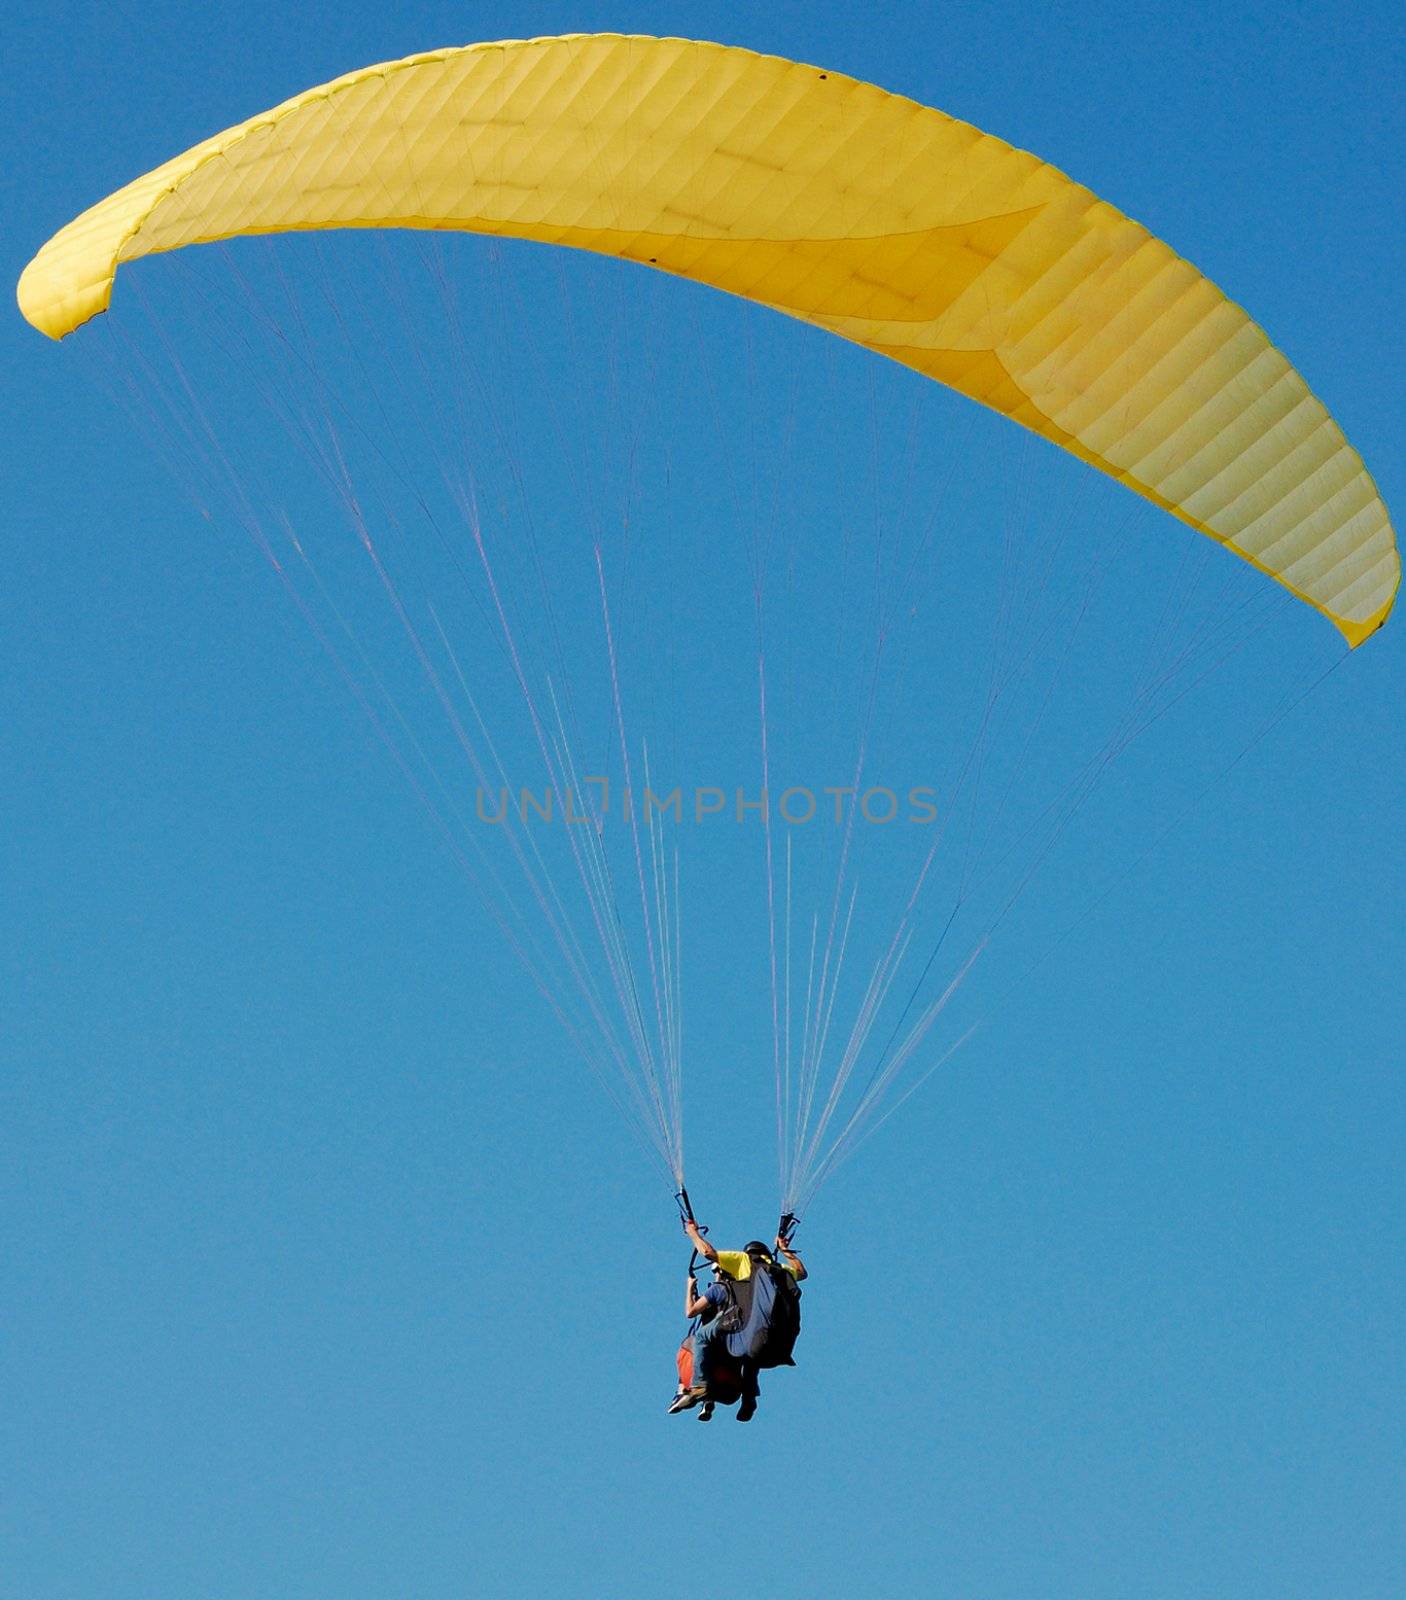 Double Paragliding through a blue sky